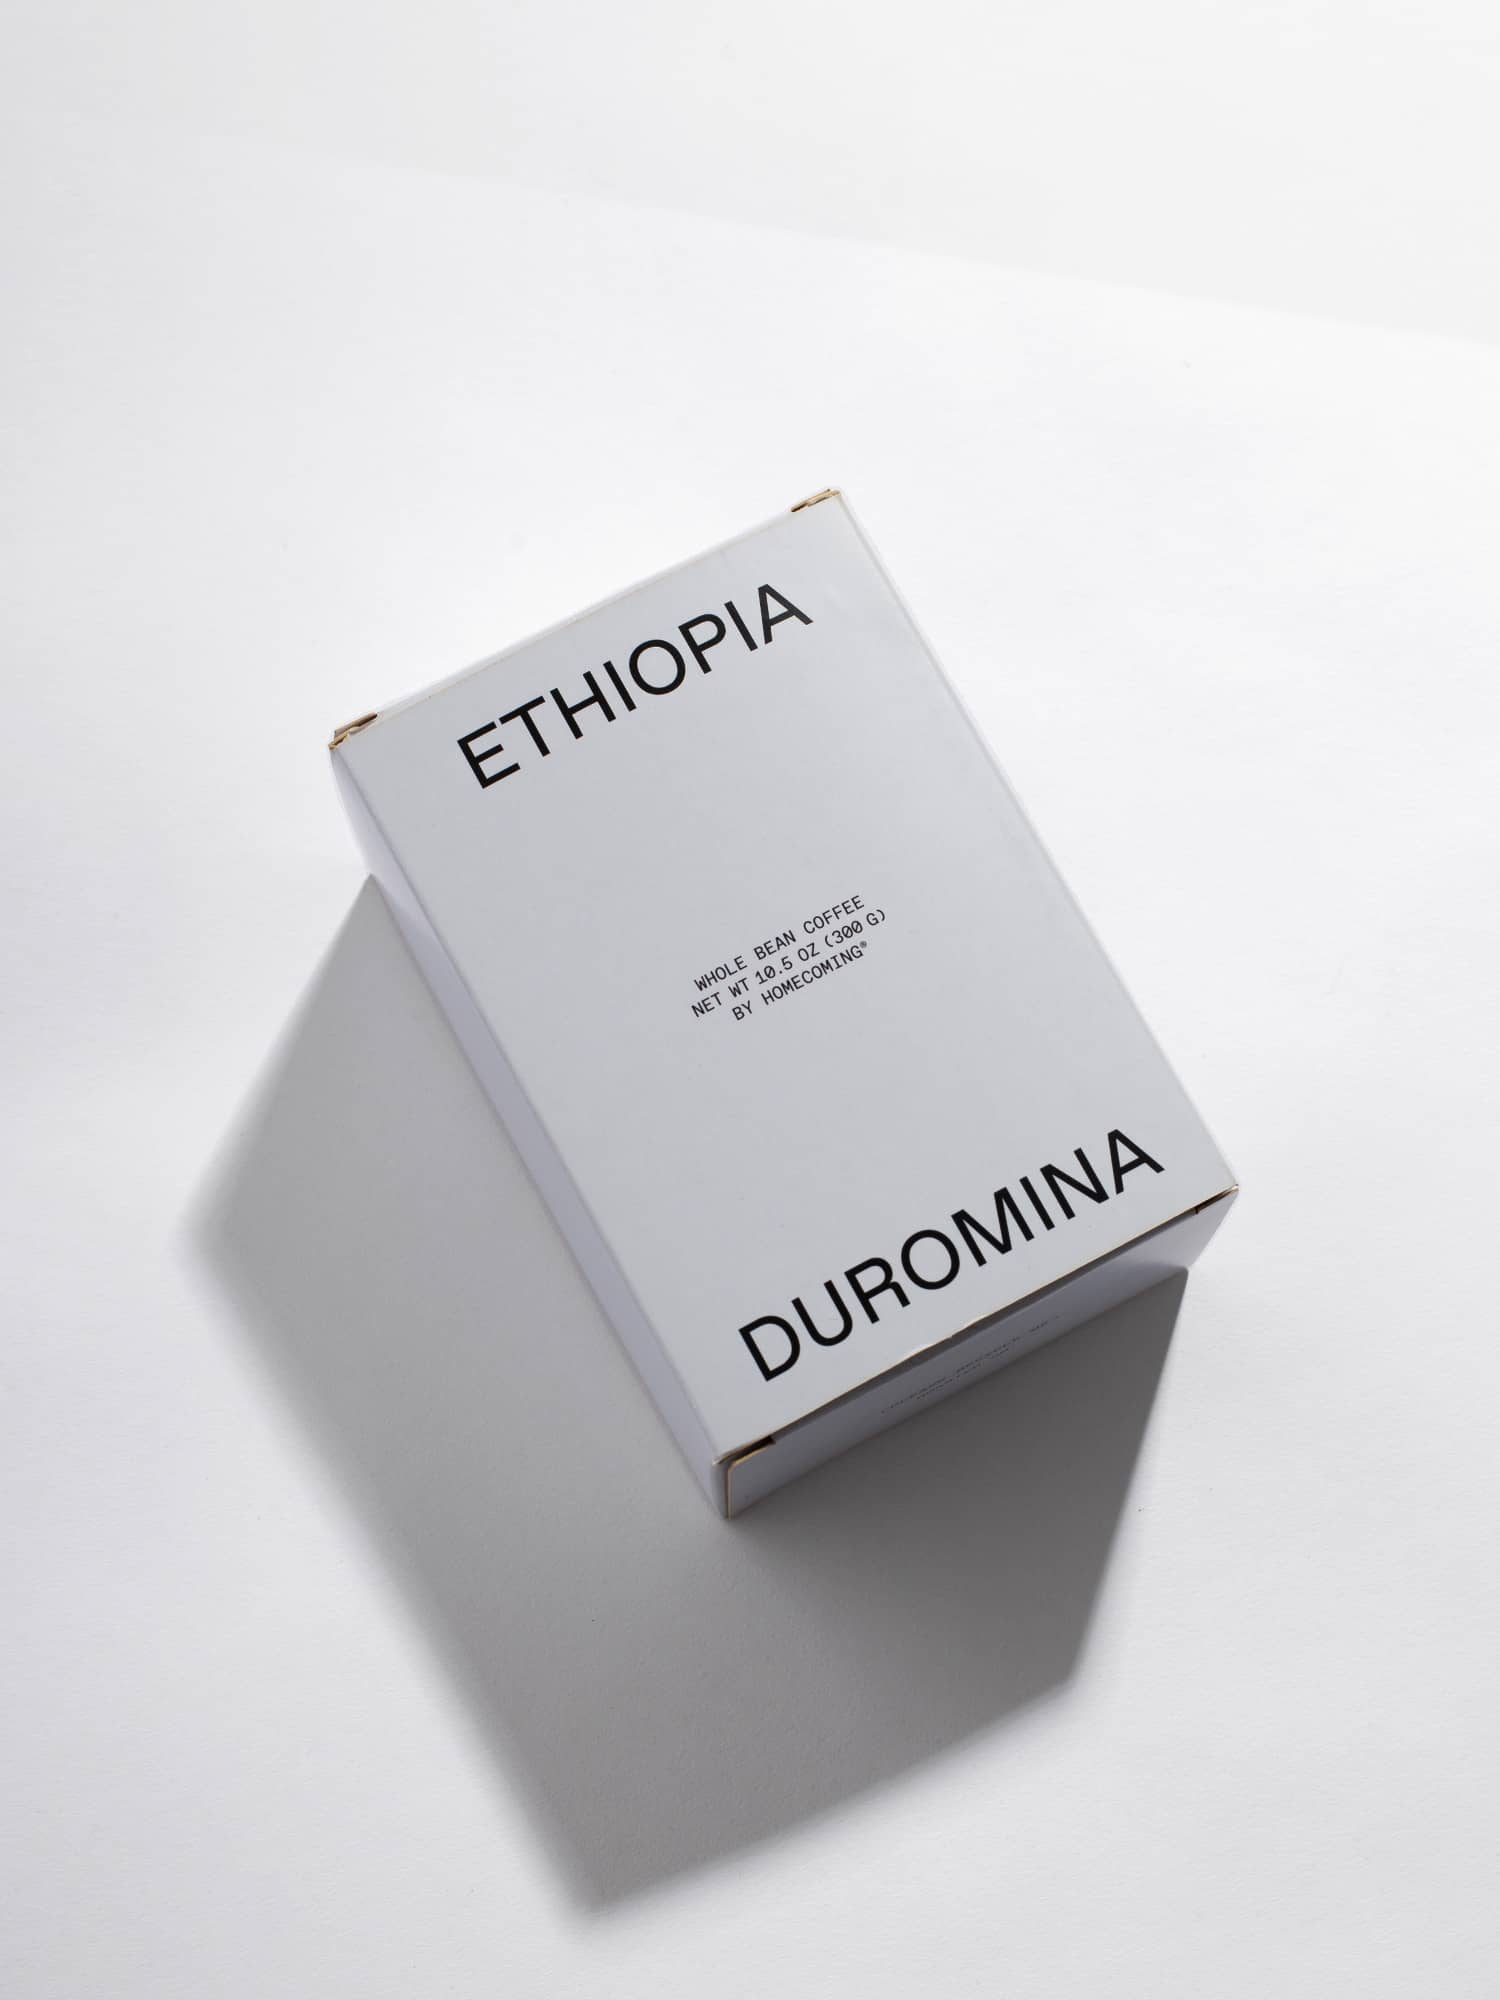 Ethiopia Duromina